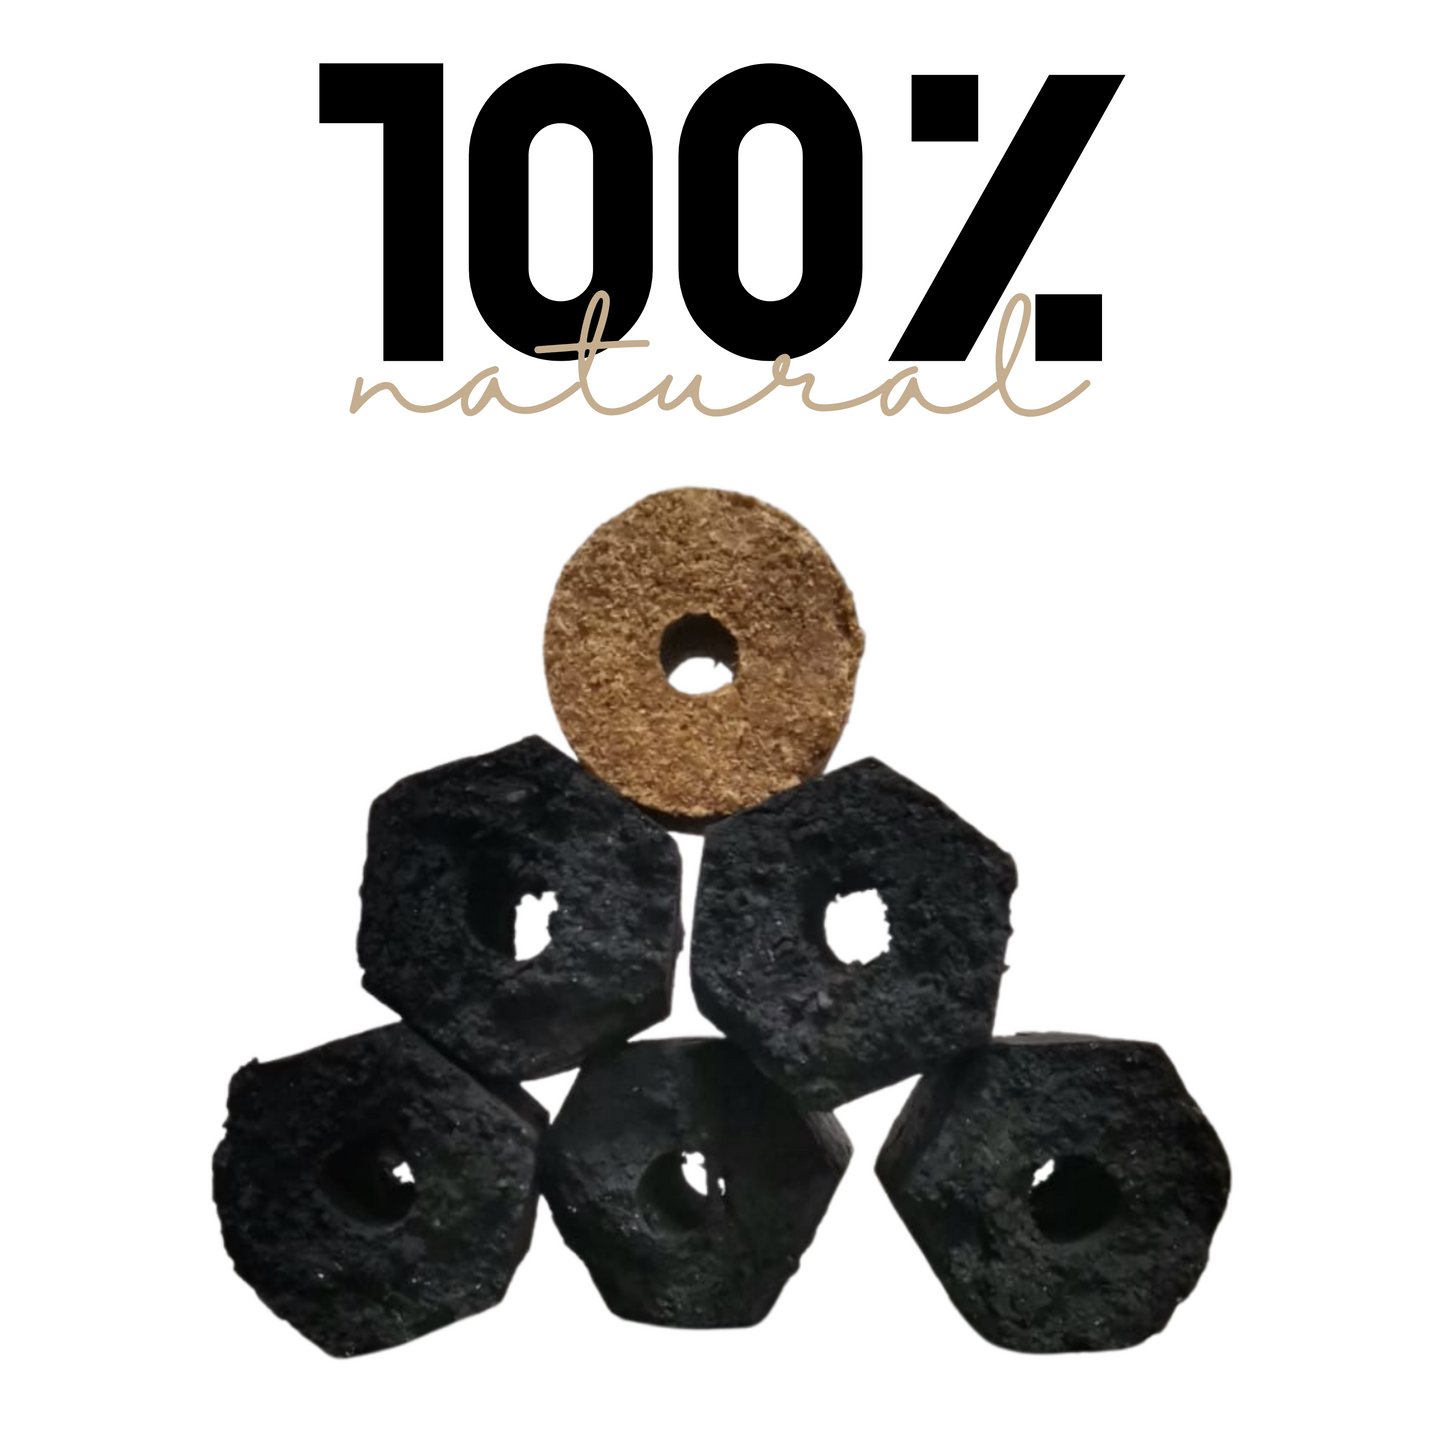 Briqueta Hexagonal | Carbón de Encino | 100% natural | 10.5 kg | Mexpofood